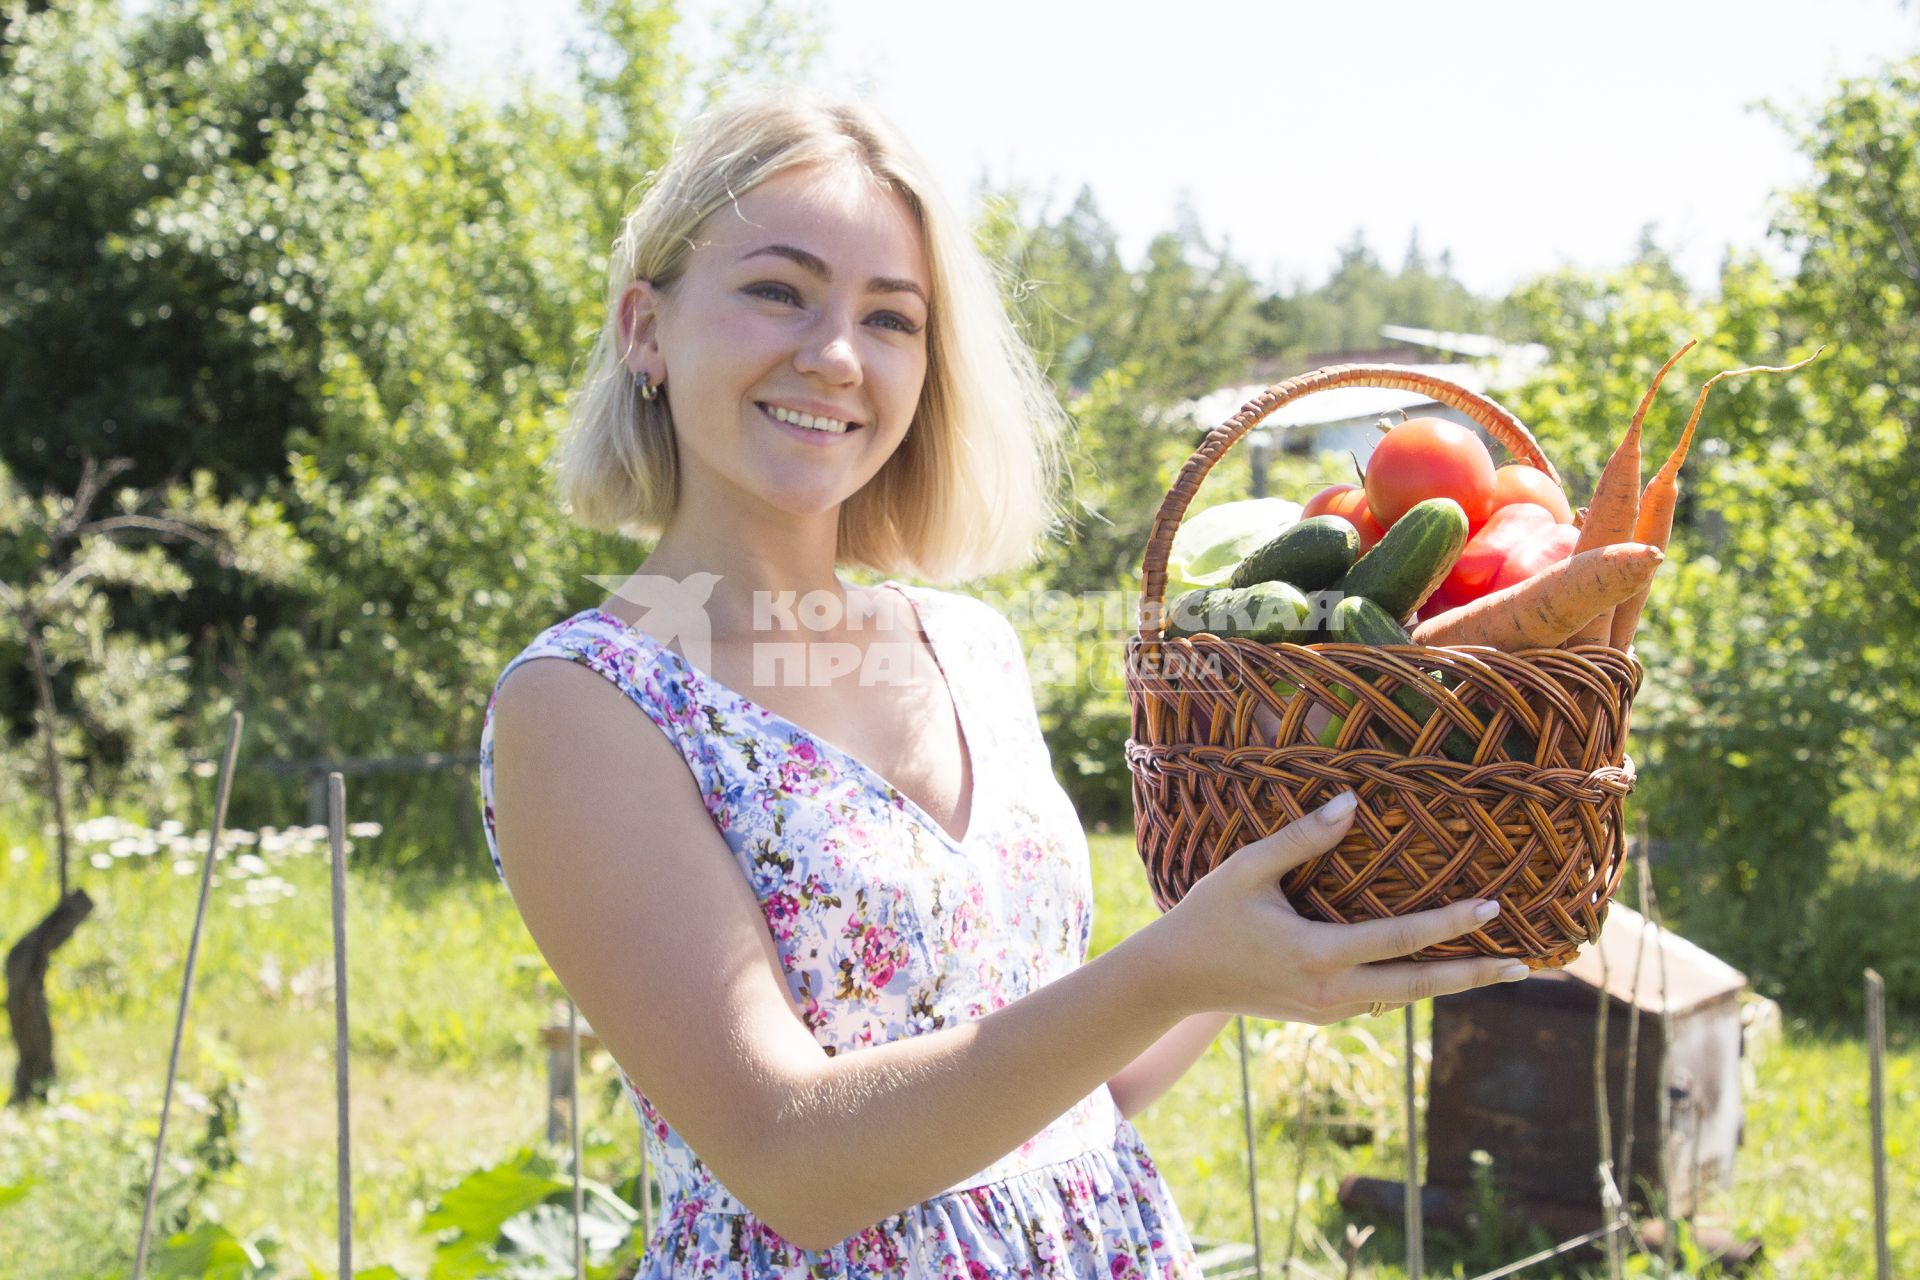 Иркутск. Девушка собирает урожай овощей на даче.